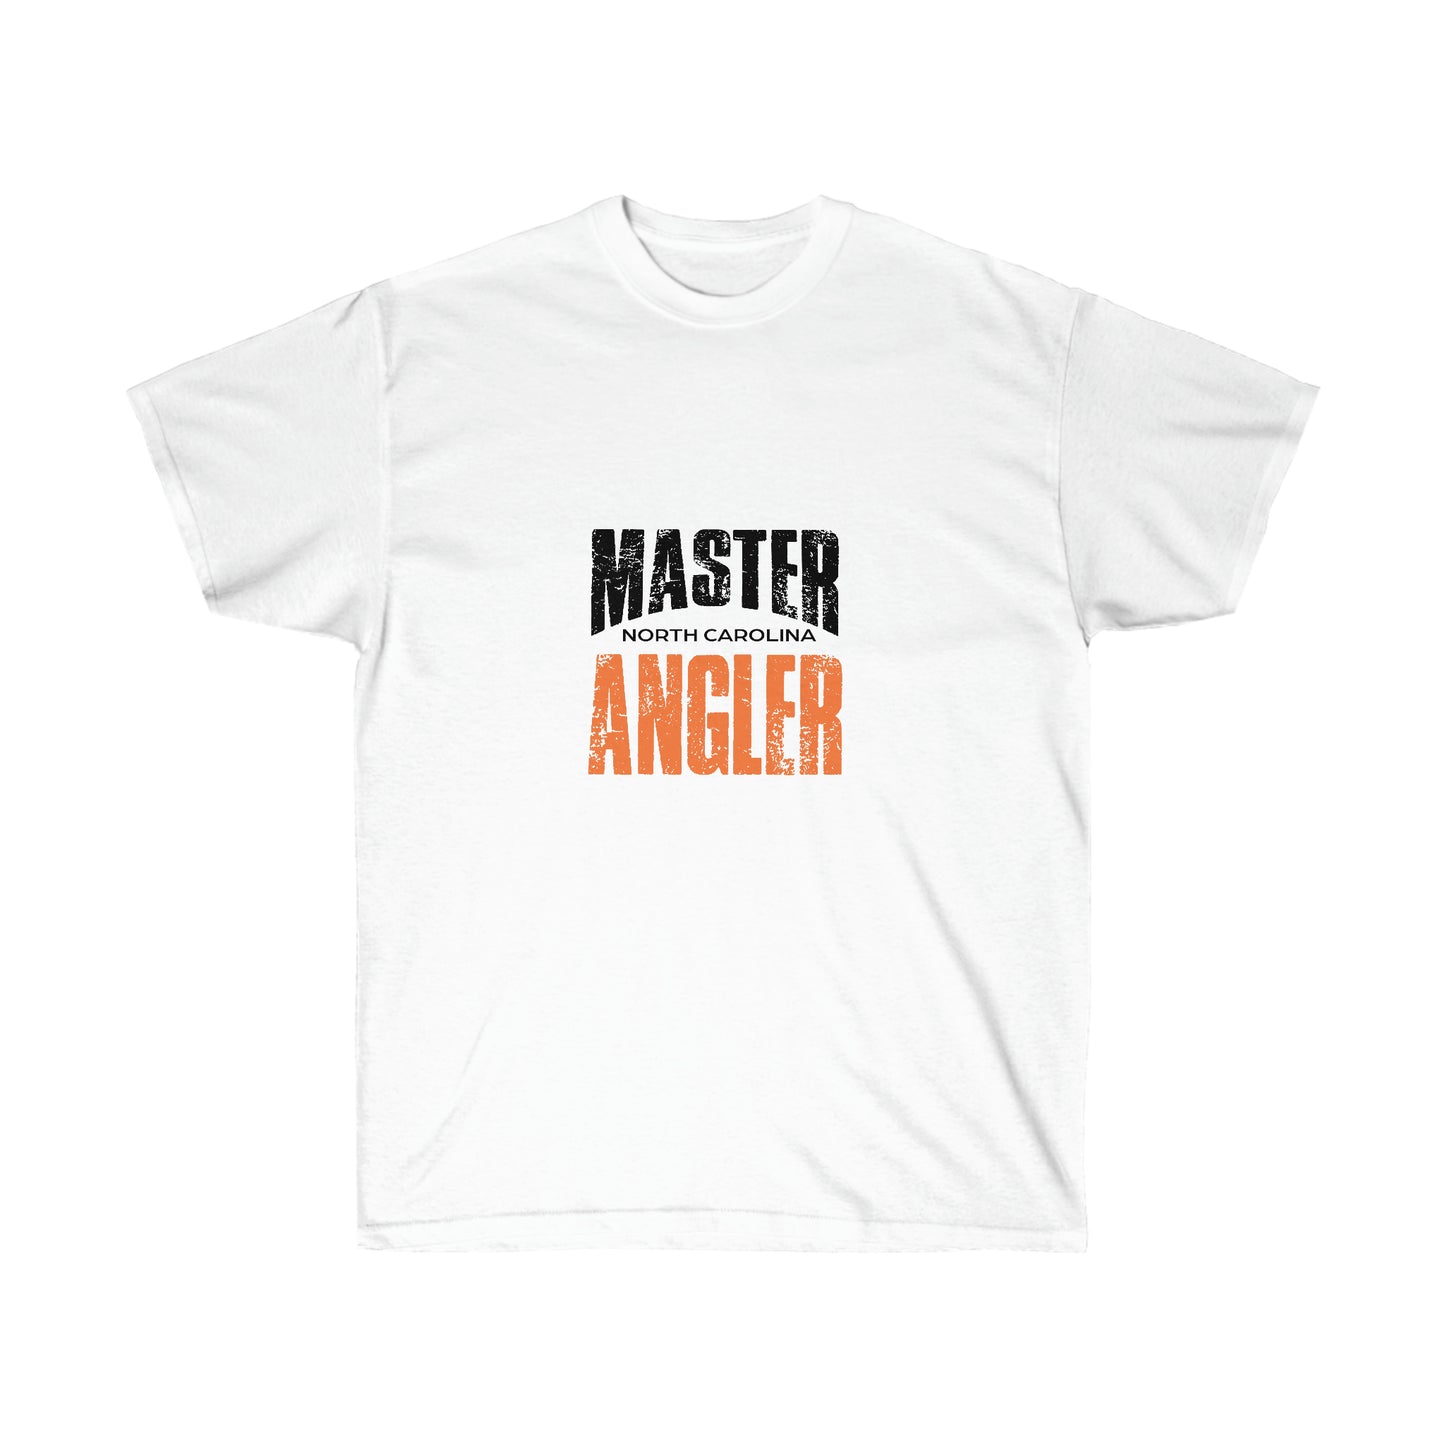 North Carolina Master Angler - Square Orange